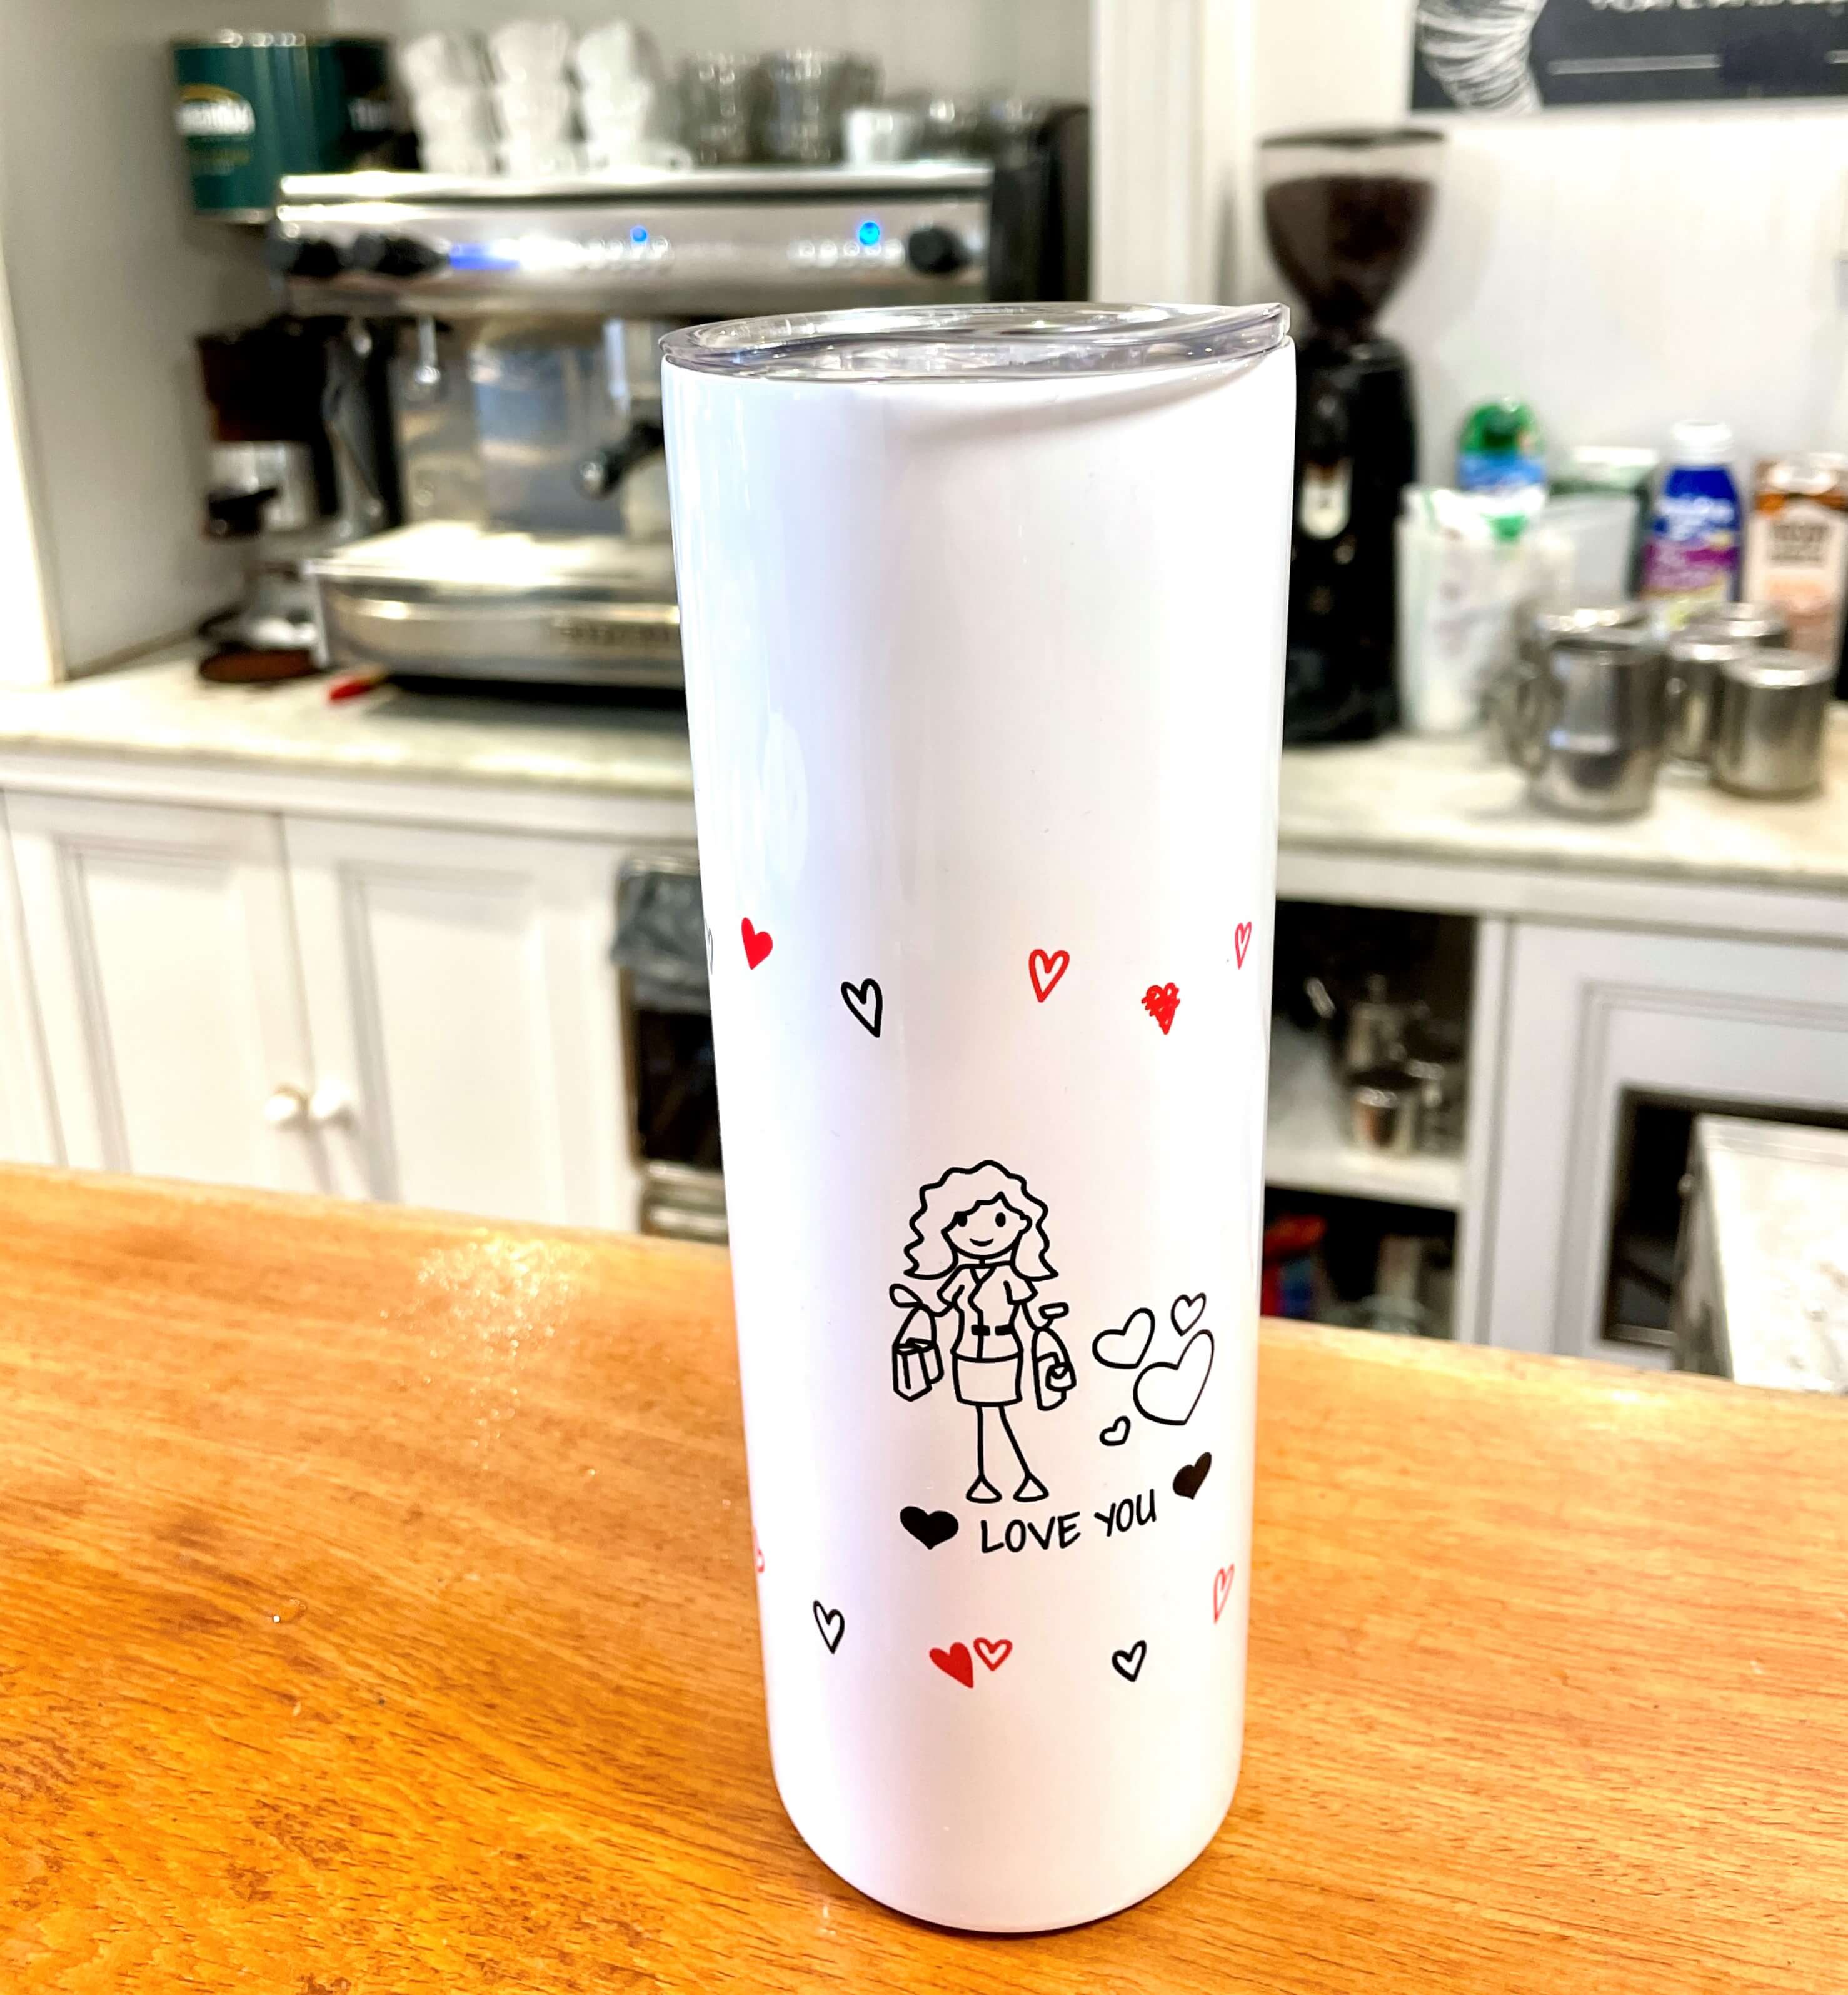 Les mugs thermos To-Go gardent la température des boissons, parfaits comme cadeau de fête des mères, cadeau original et unique